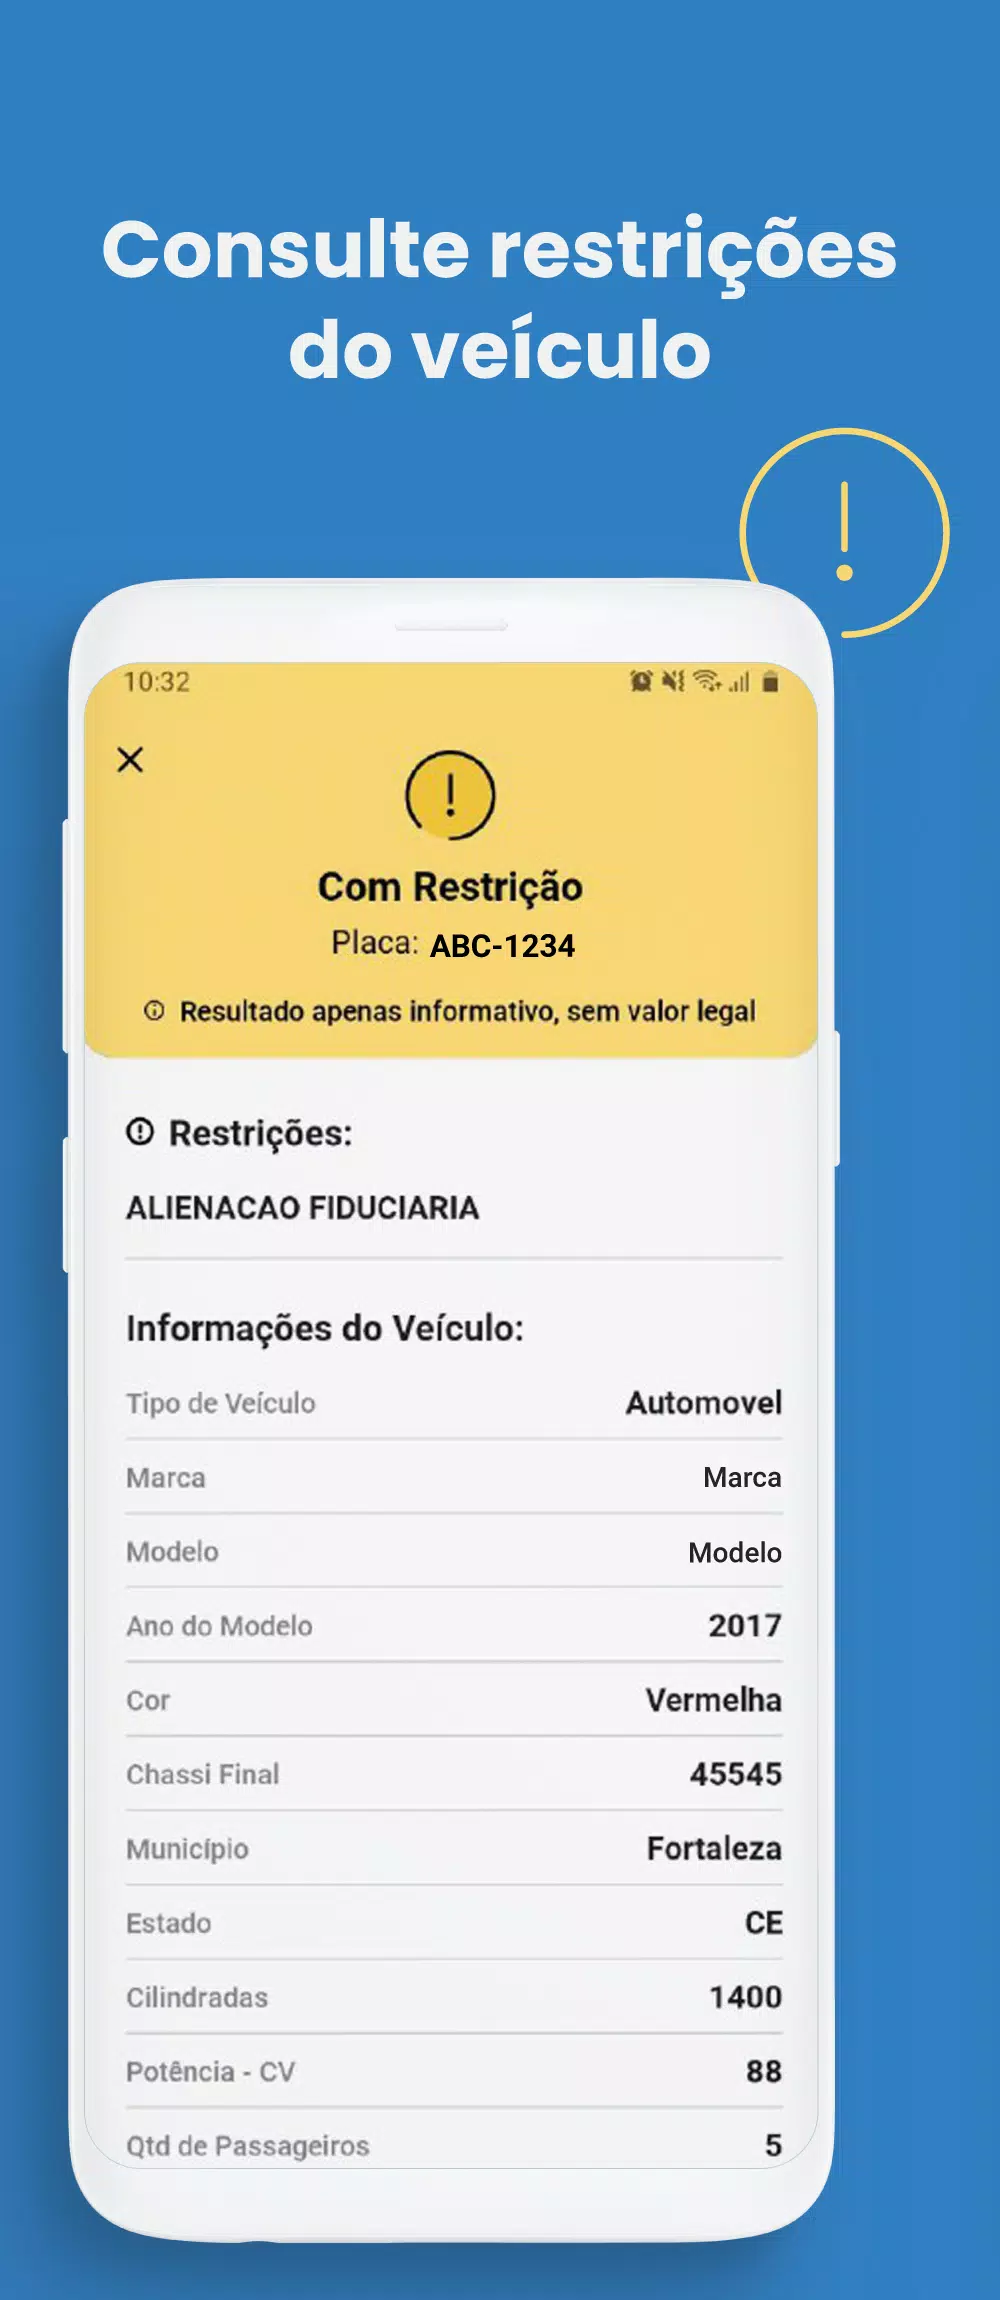 Consulta Placa + Mercosul + Tabela FIPE APK (Android App) - Baixar